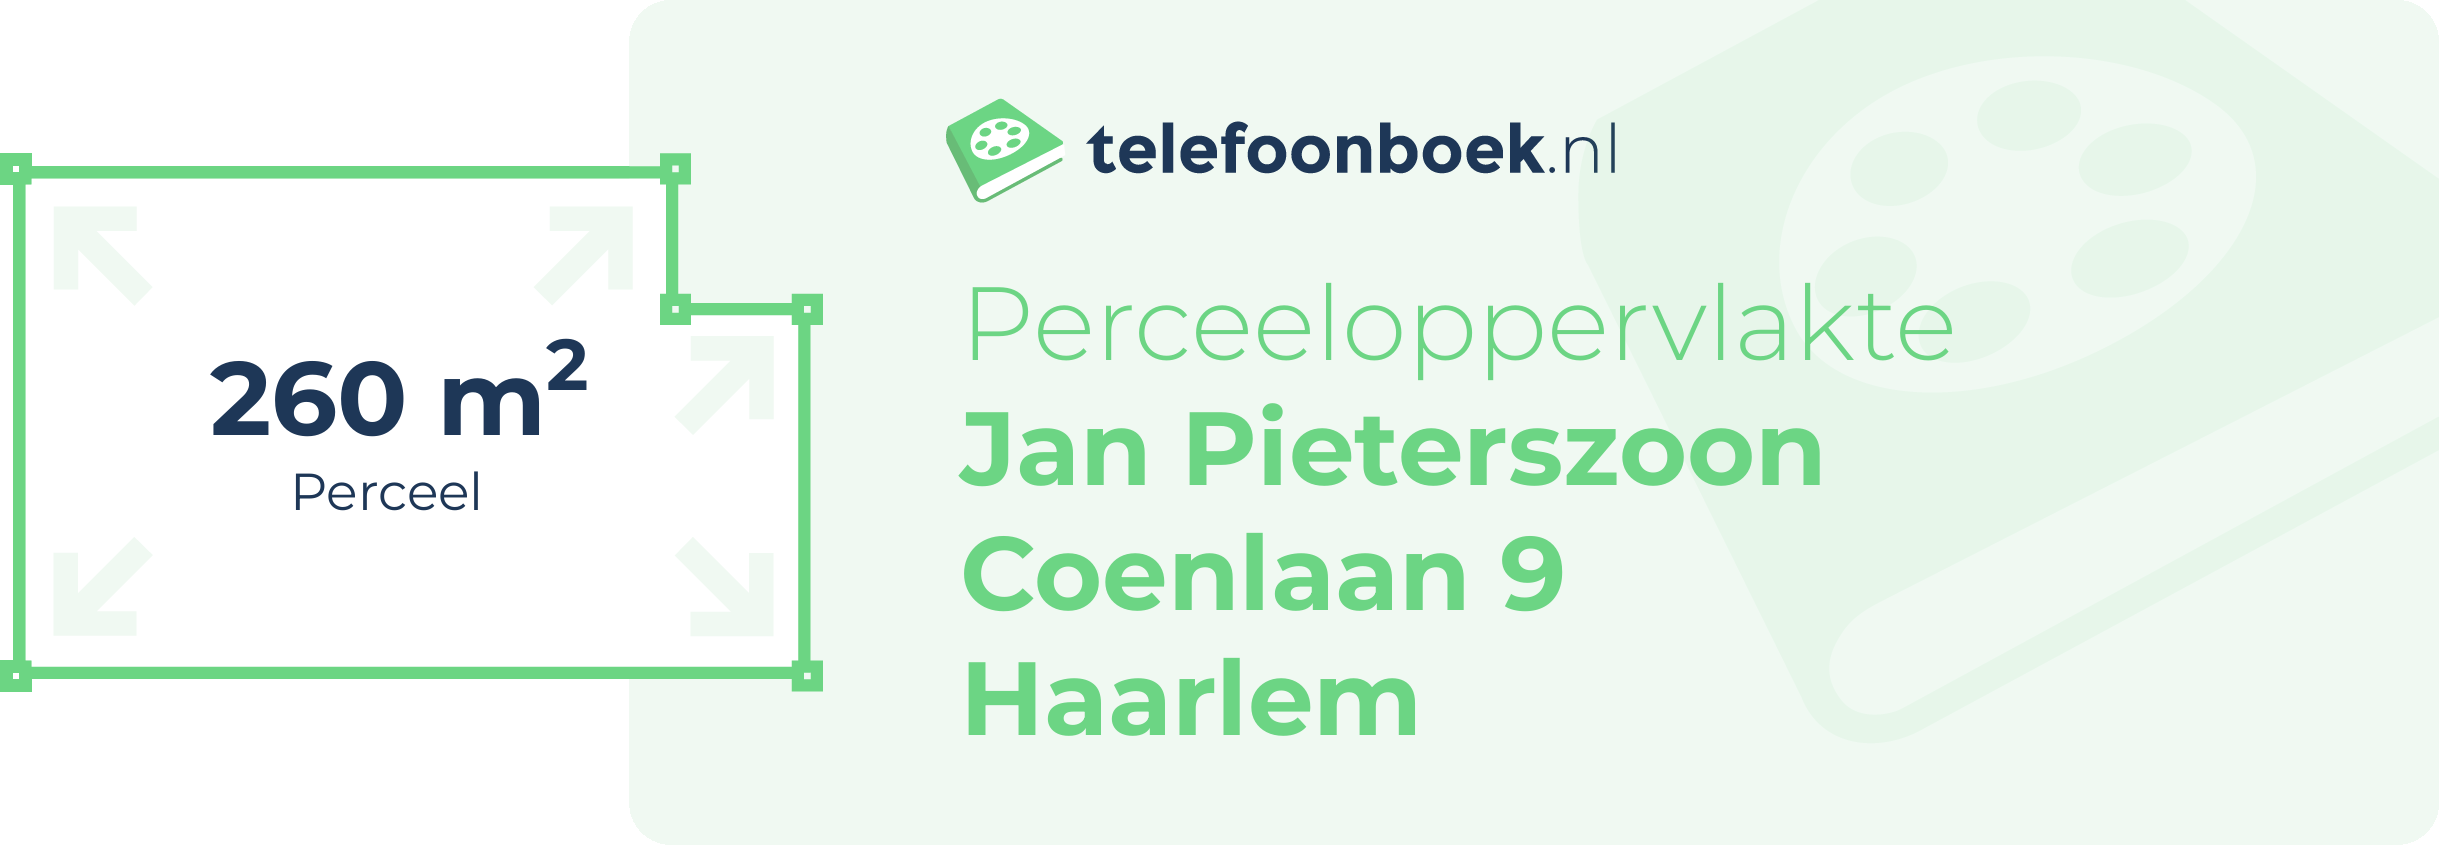 Perceeloppervlakte Jan Pieterszoon Coenlaan 9 Haarlem